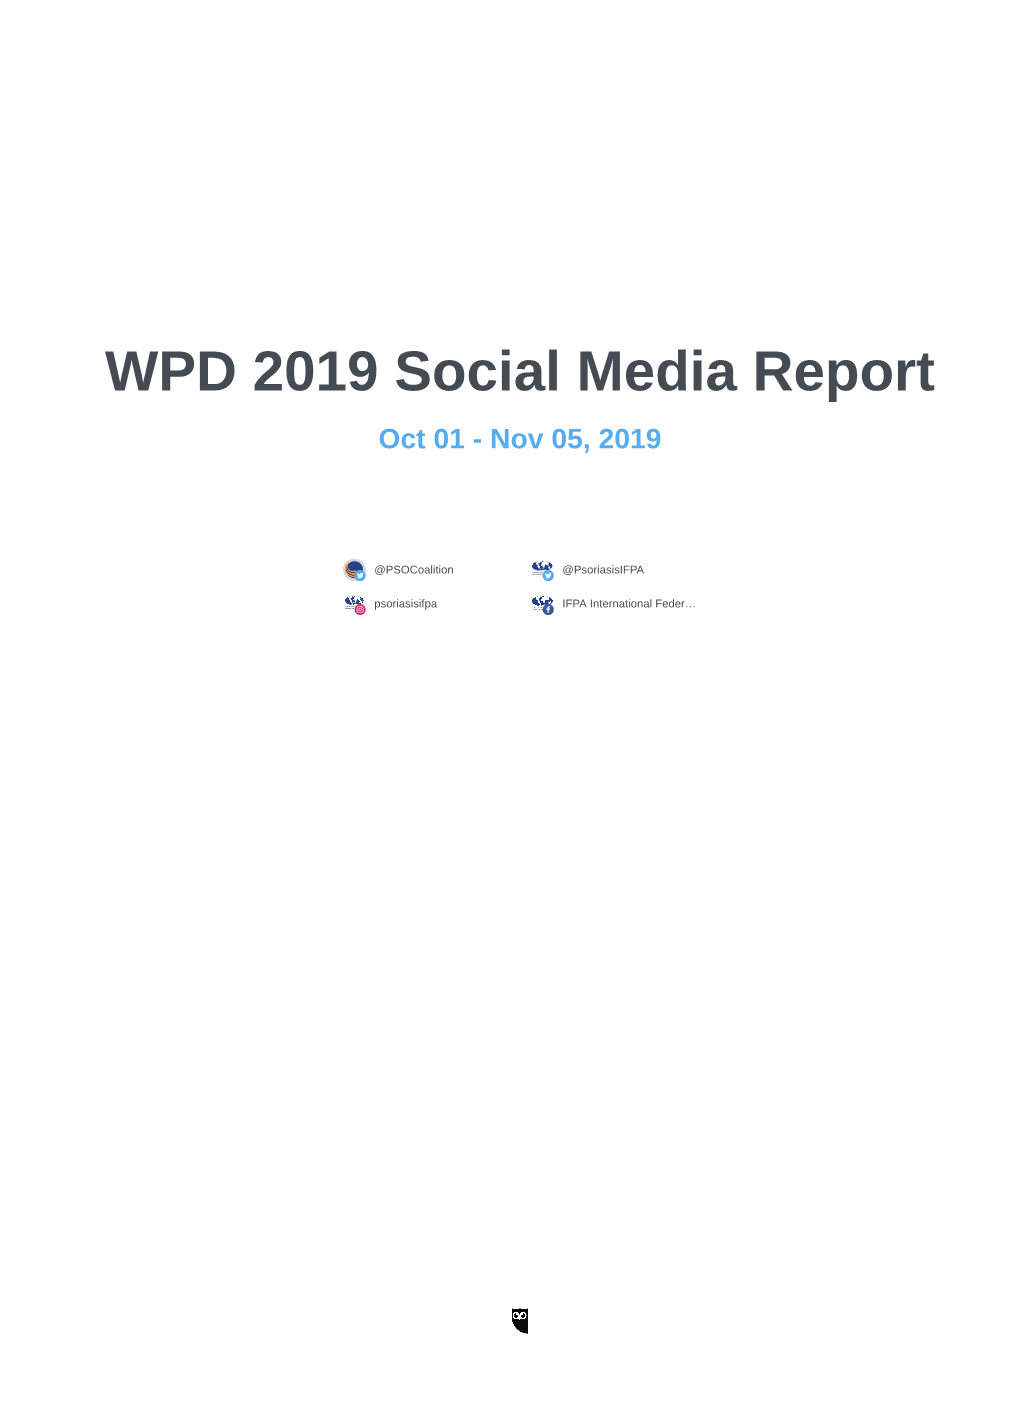 WPD 2019 Social Media Report Oct 01 - Nov 05, 2019